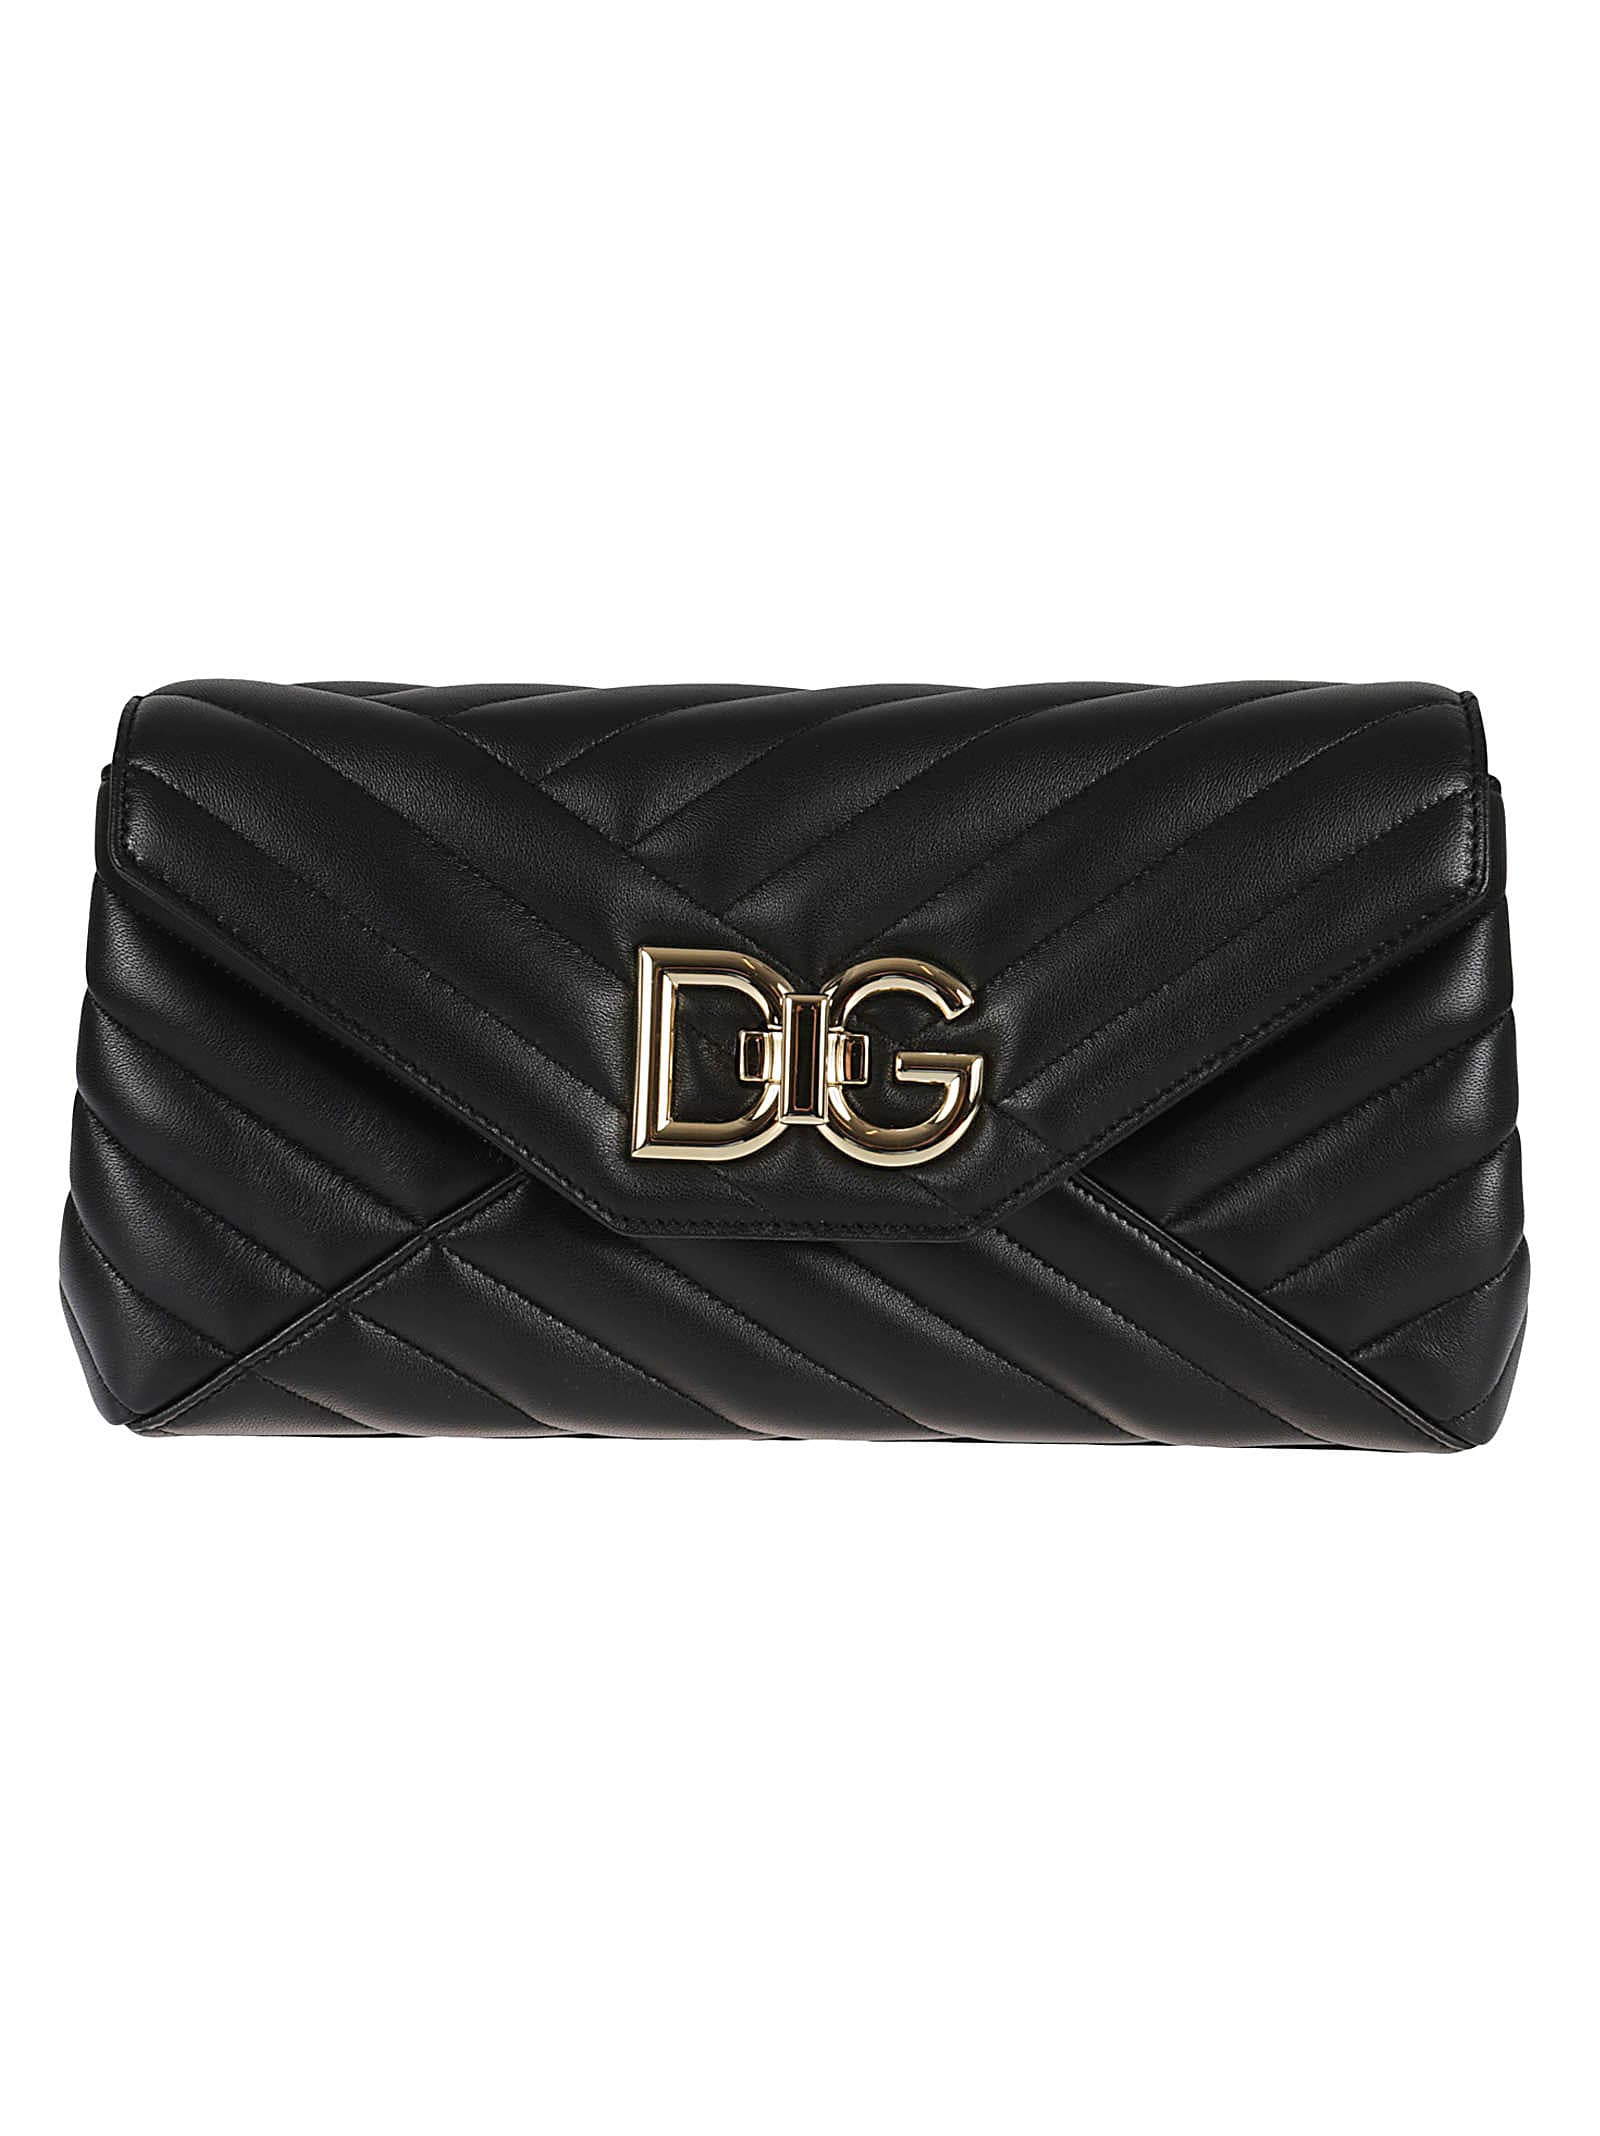 Dolce & Gabbana Logo Quilted Envelope Shoulder Bag